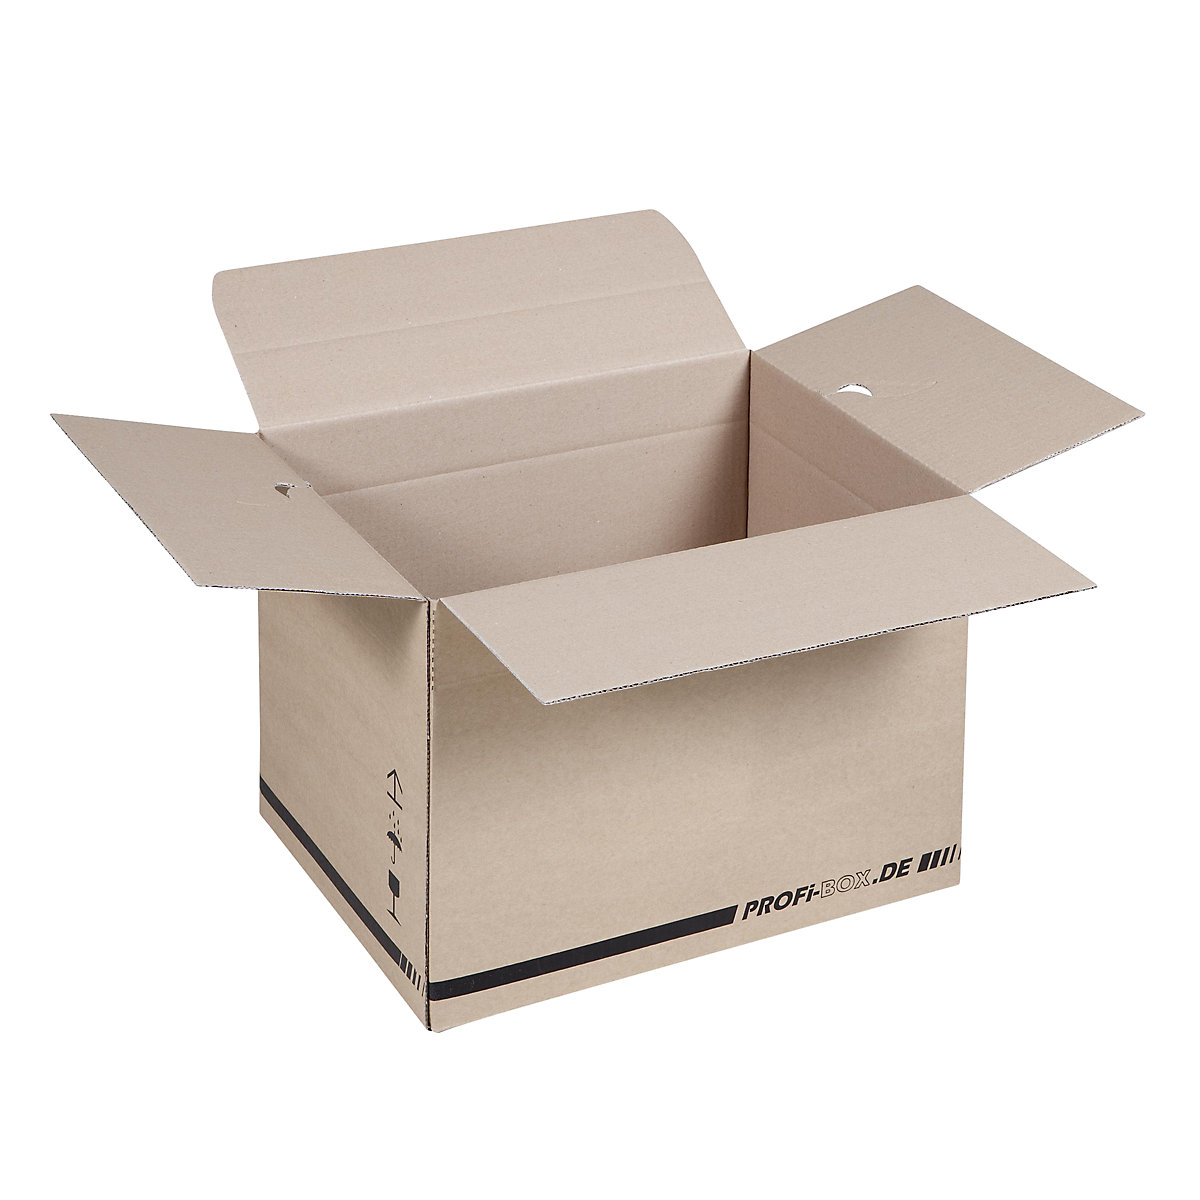 Profi box, z 1-vlnitej lepenky, FEFCO 0701, vnútorné rozmery 384 x 284 x 284 mm, OJ 50 ks-8